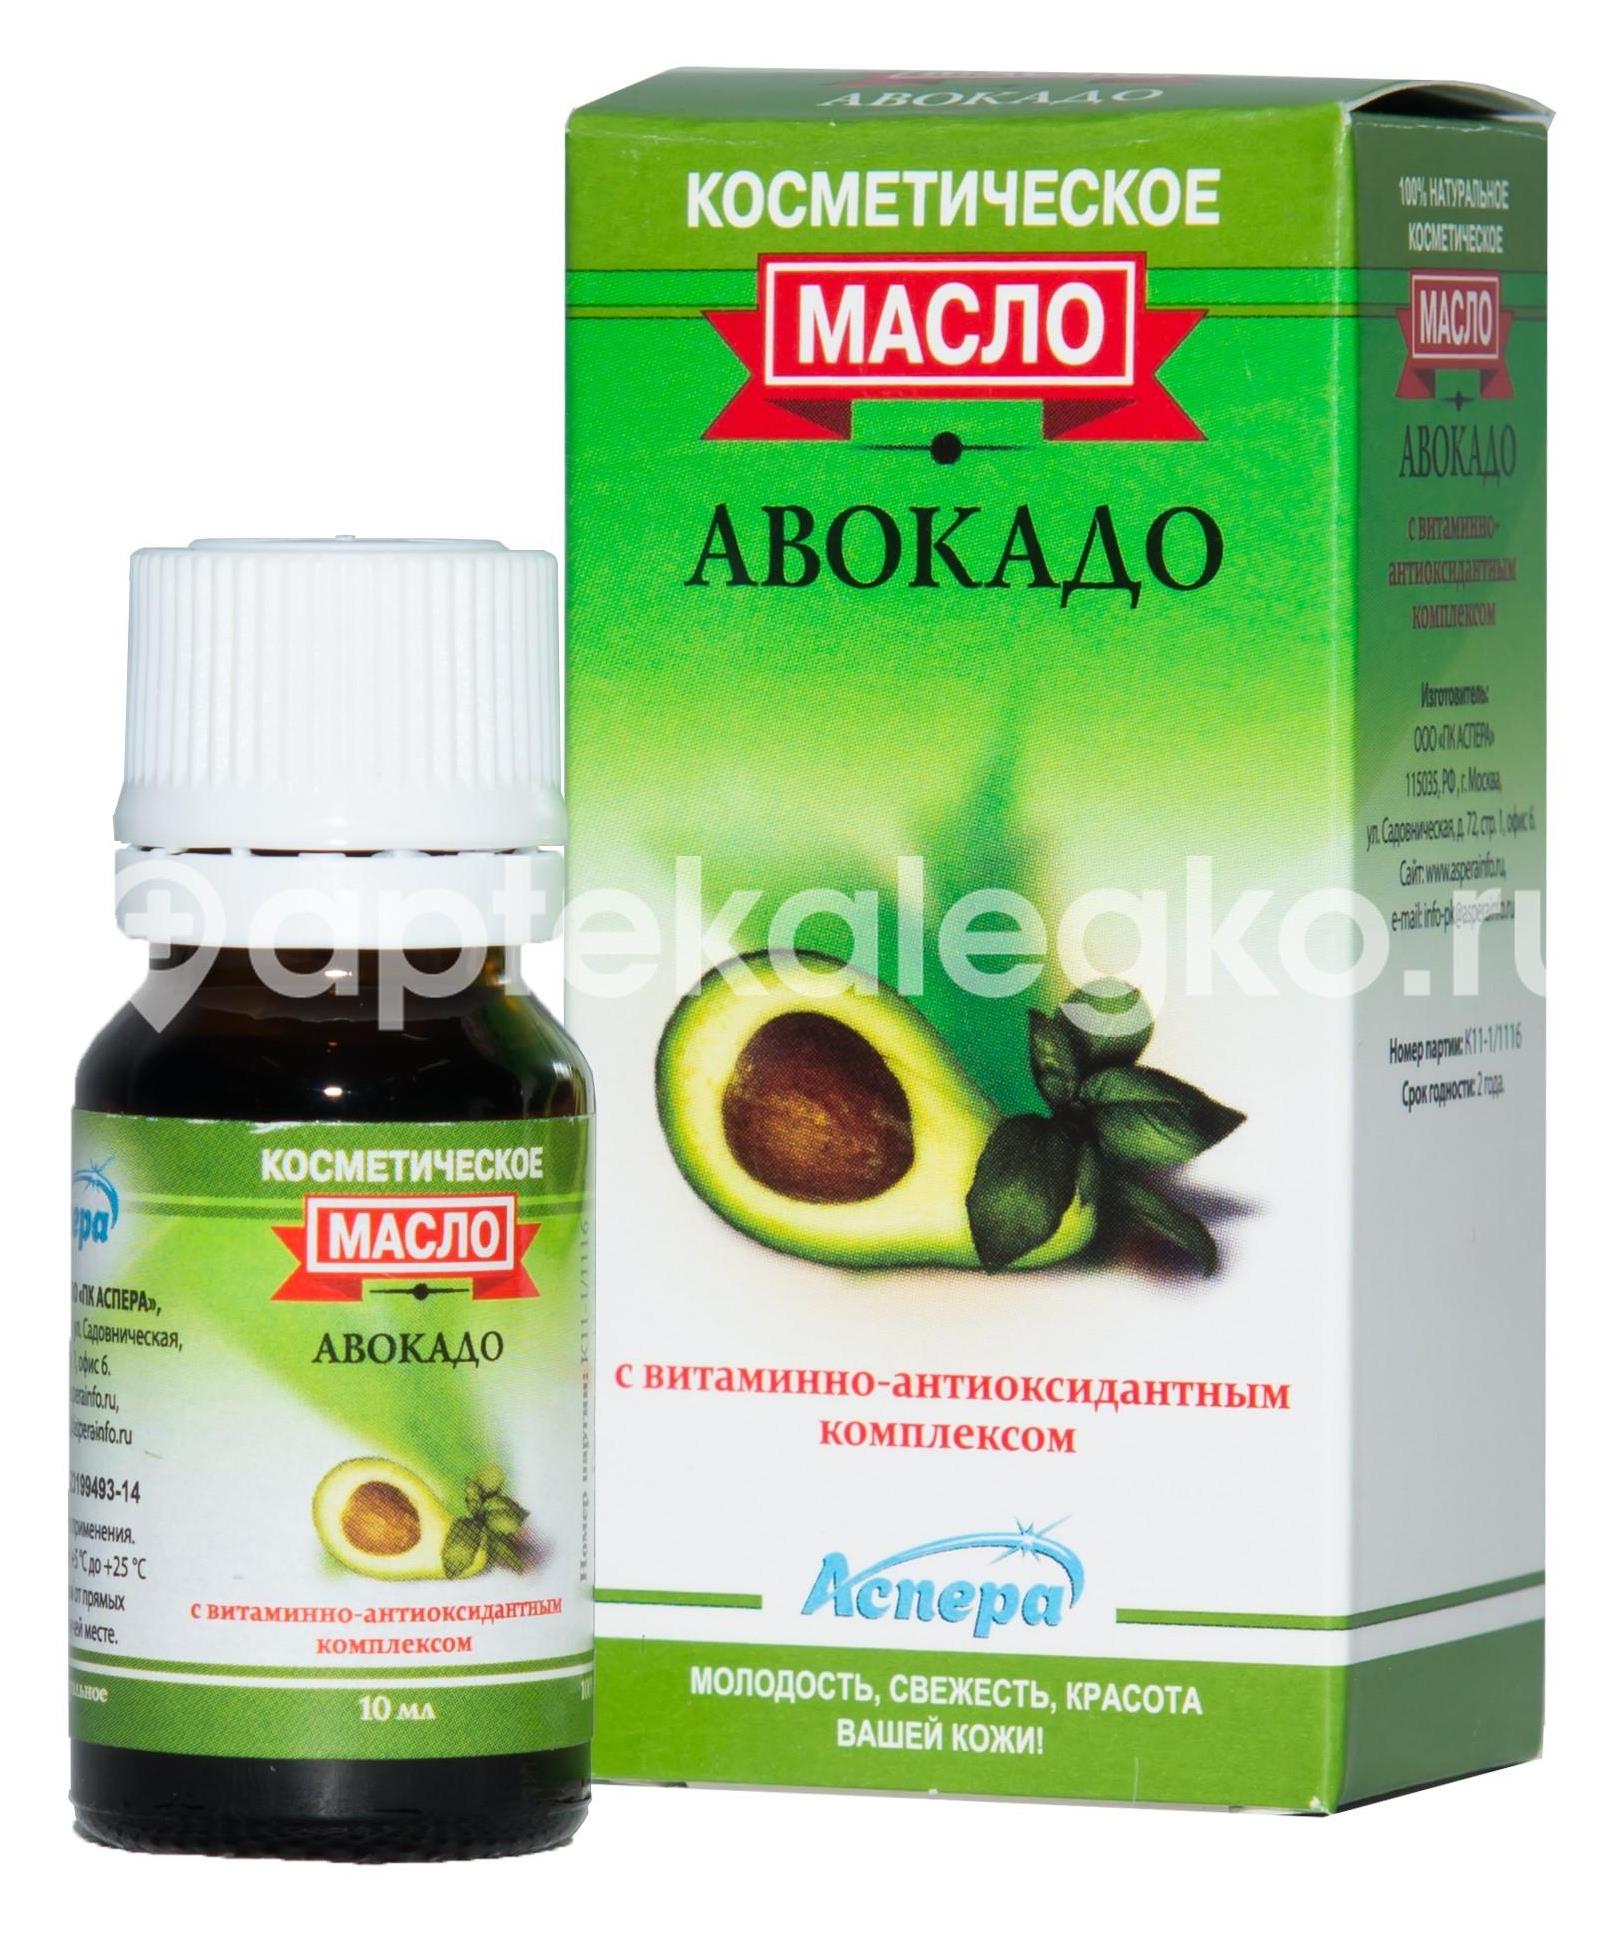 Изображение Аспера масло авокадо косметическое  витаминно-антиоксидантным  комплексом  10мл. и/у